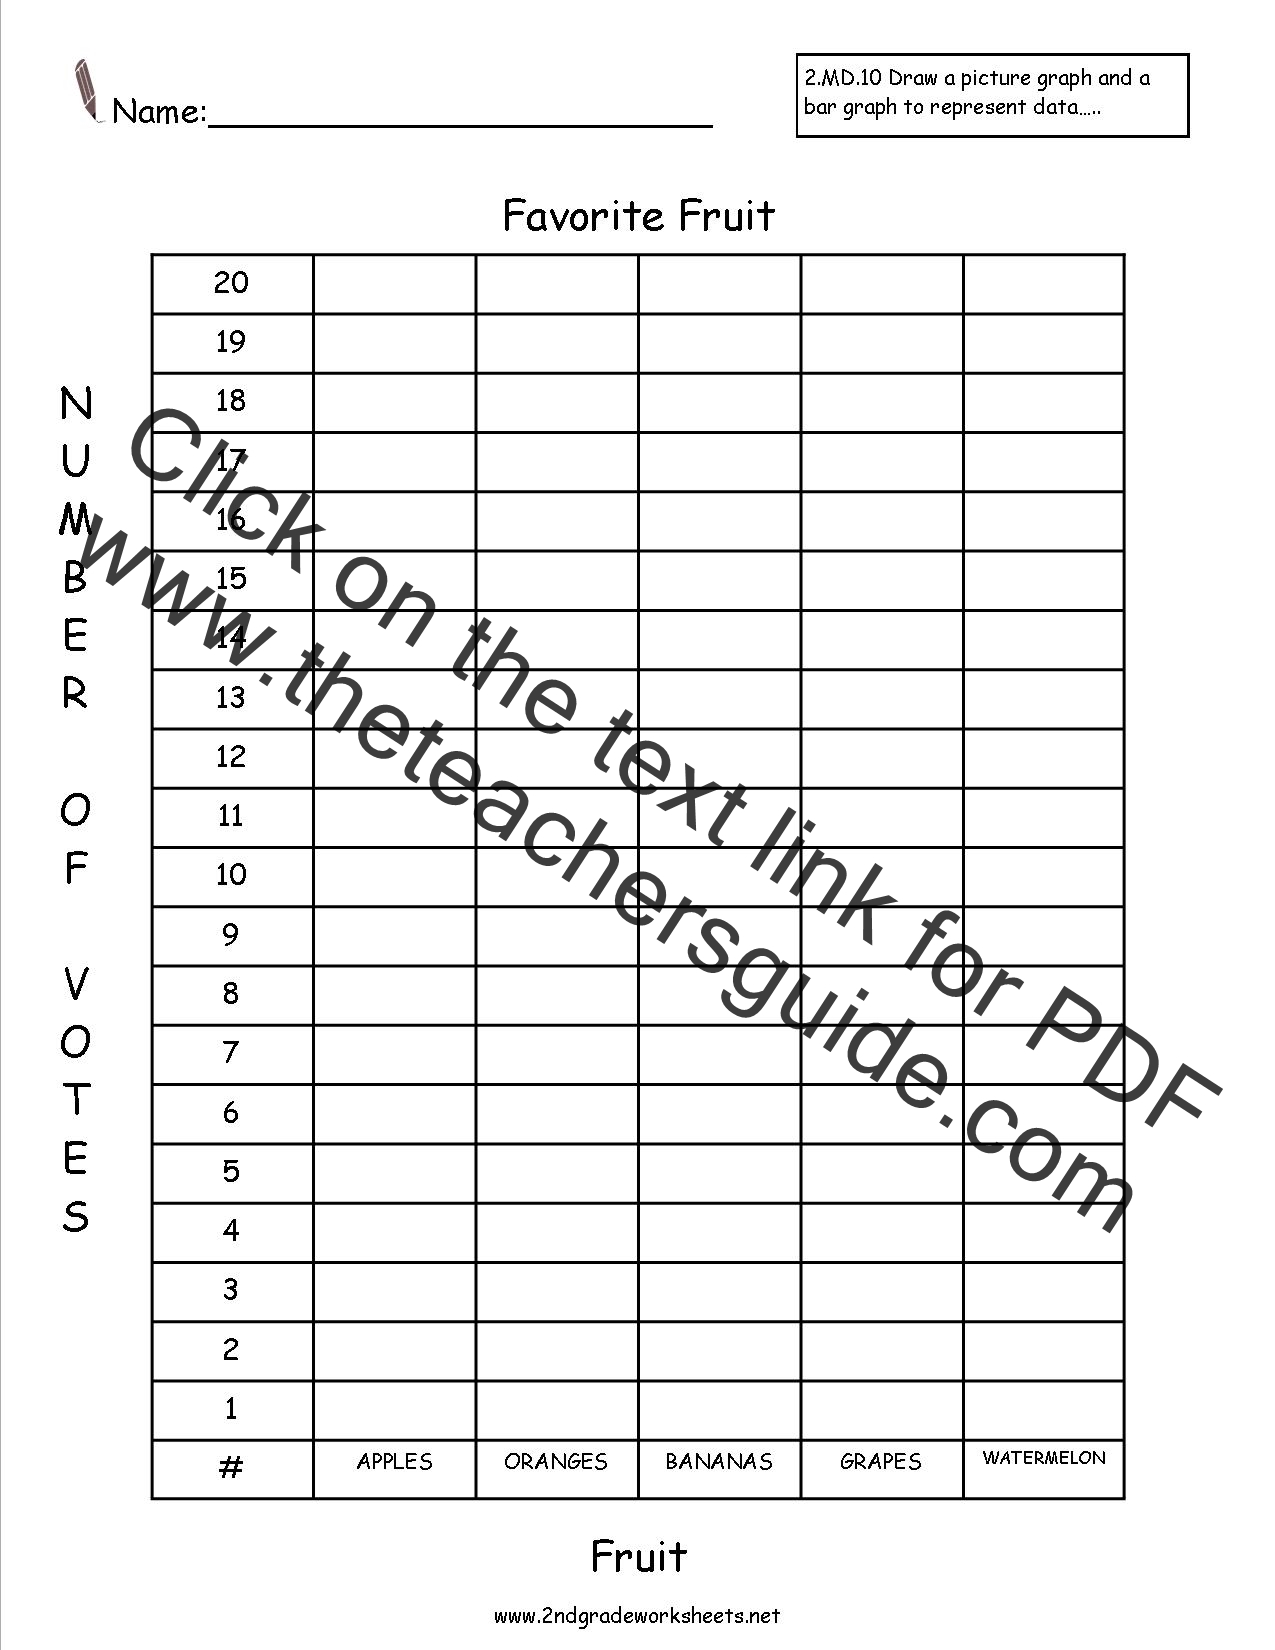 Tally Charts Ks2 Worksheets